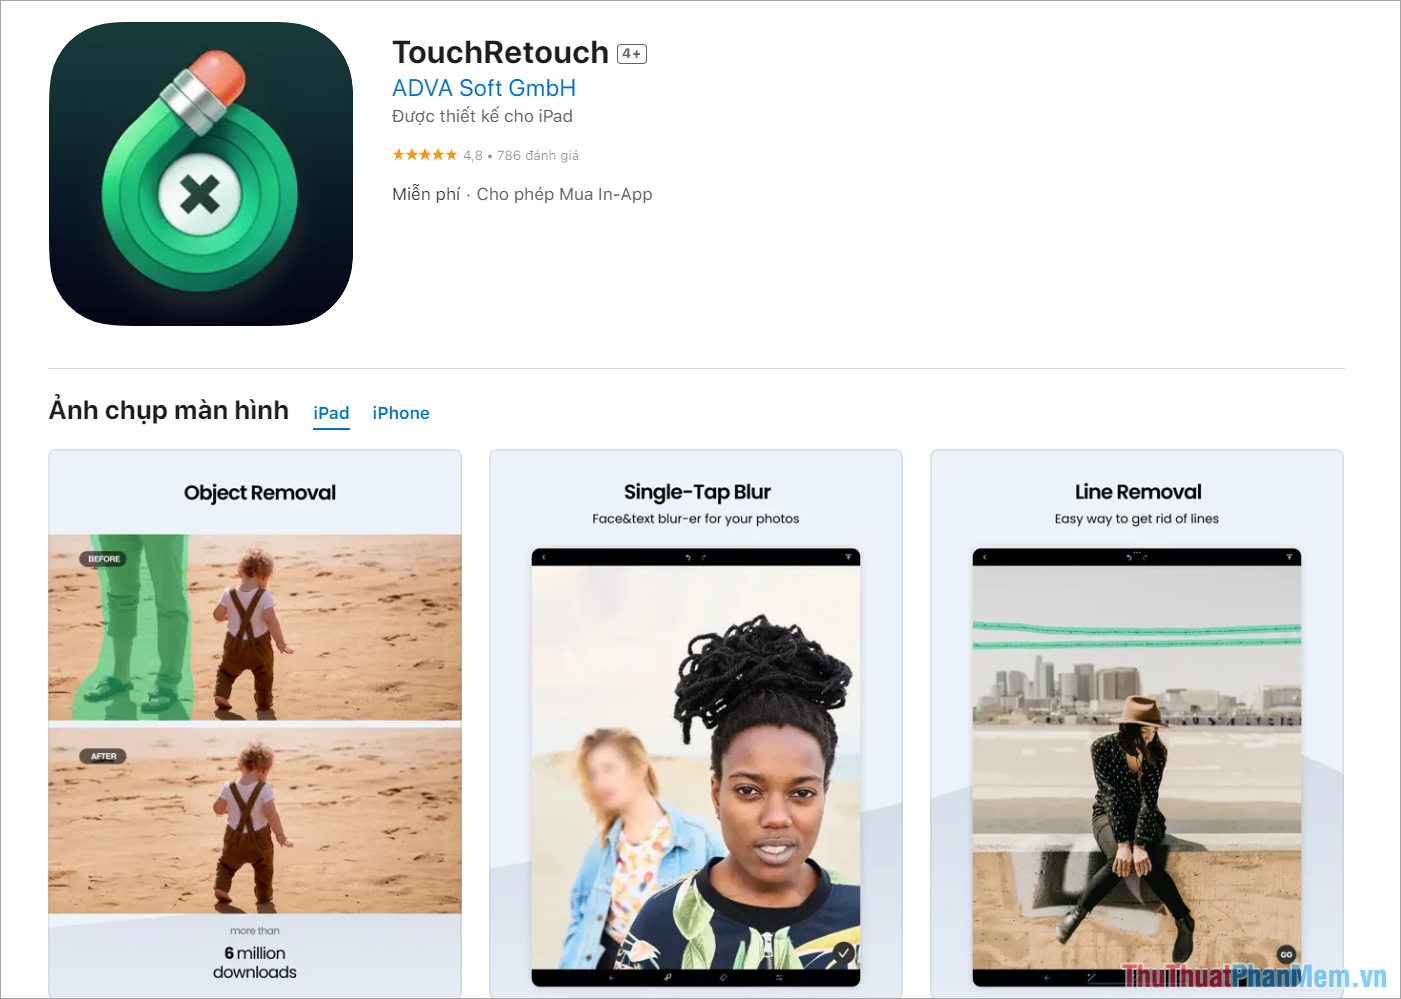 TouchRetouch – App xóa, sửa chữ trên hình ảnh nhanh chóng